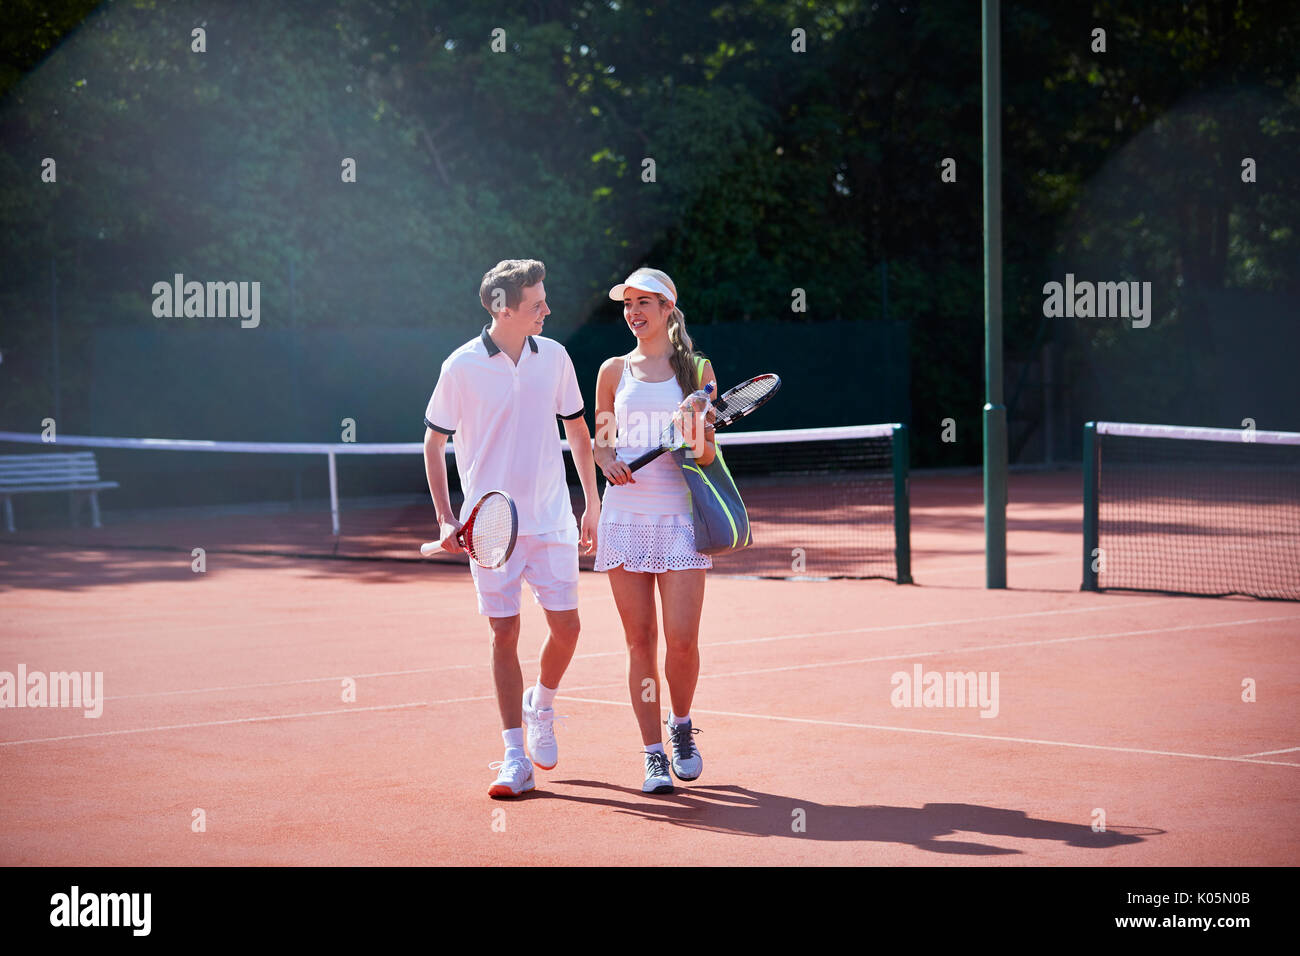 Giocatore di Tennis giovane camminare portando racchette da tennis sul soleggiato Campo da tennis in terra battuta Foto Stock